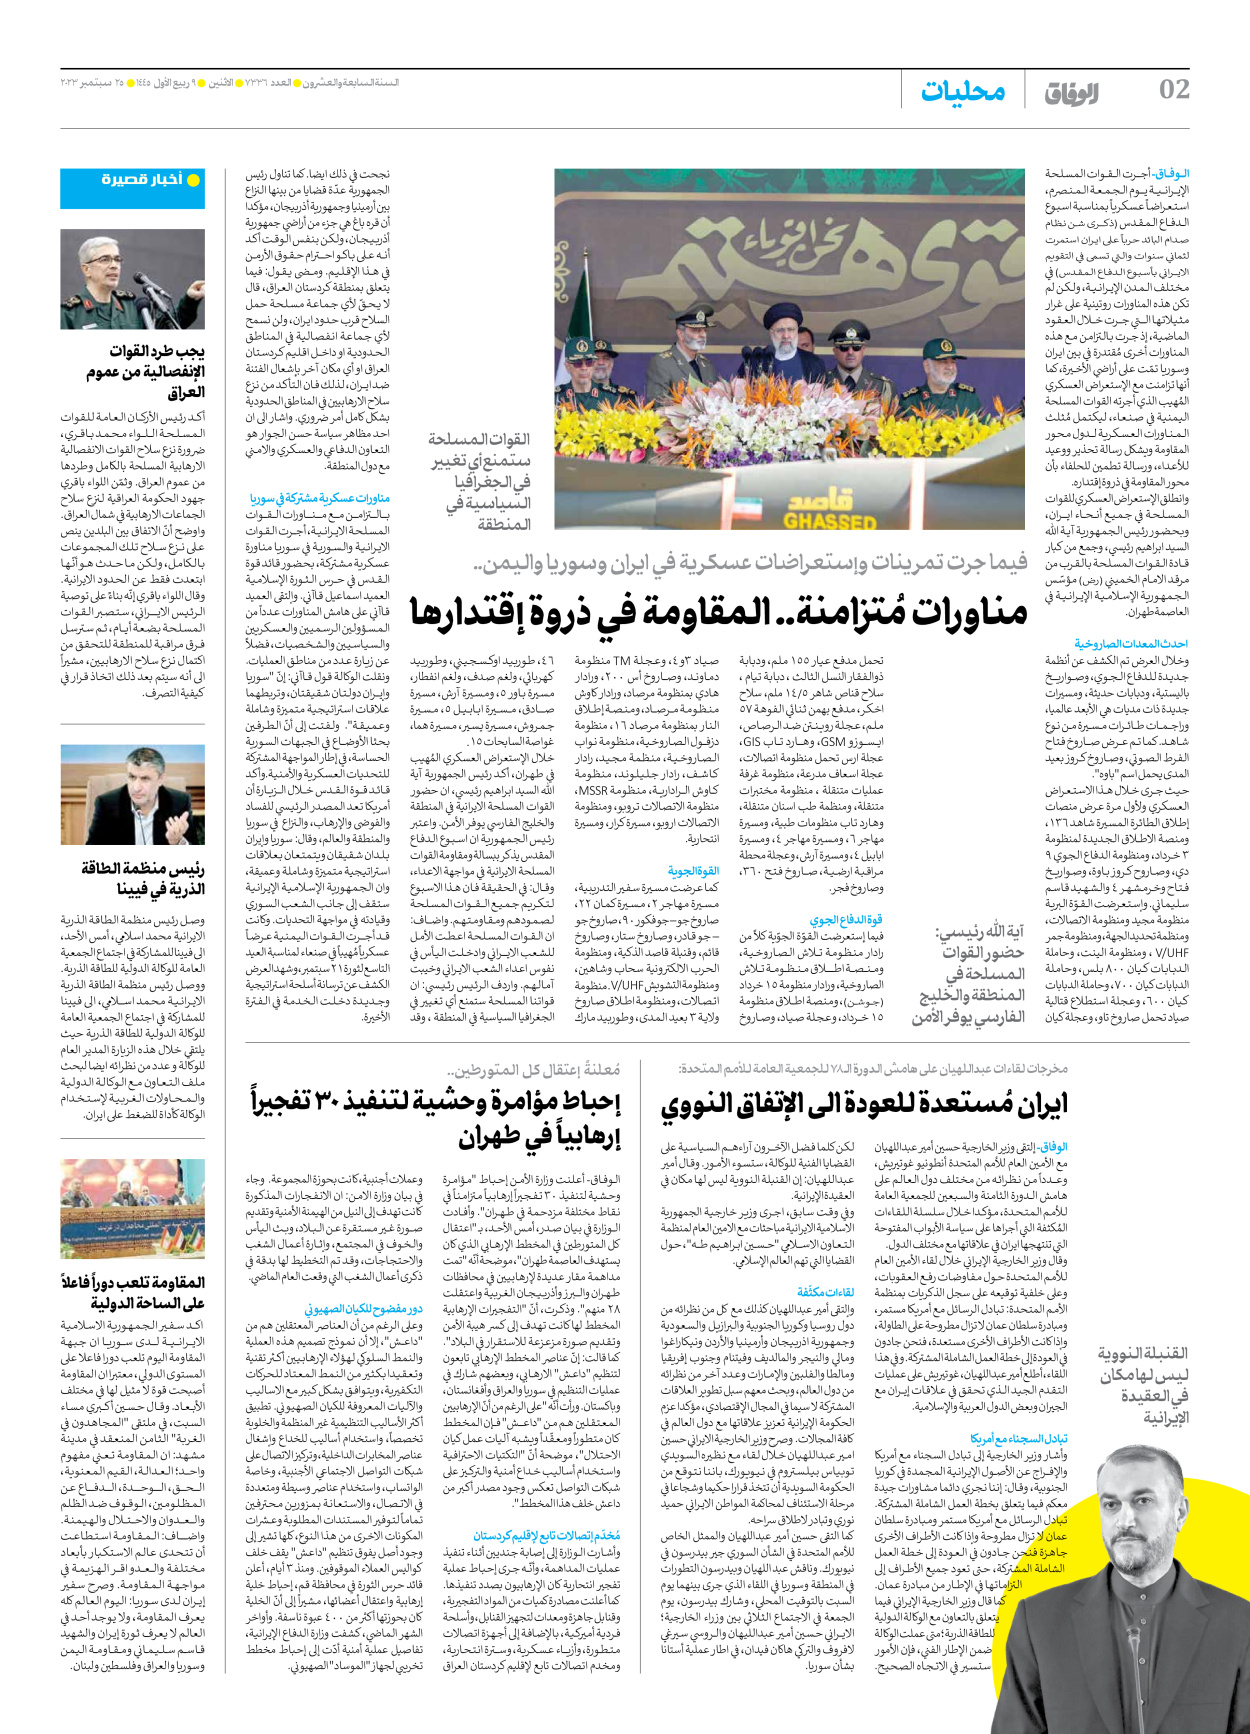 صحیفة ایران الدولیة الوفاق - العدد سبعة آلاف وثلاثمائة وستة وثلاثون - ٢٥ سبتمبر ٢٠٢٣ - الصفحة ۲